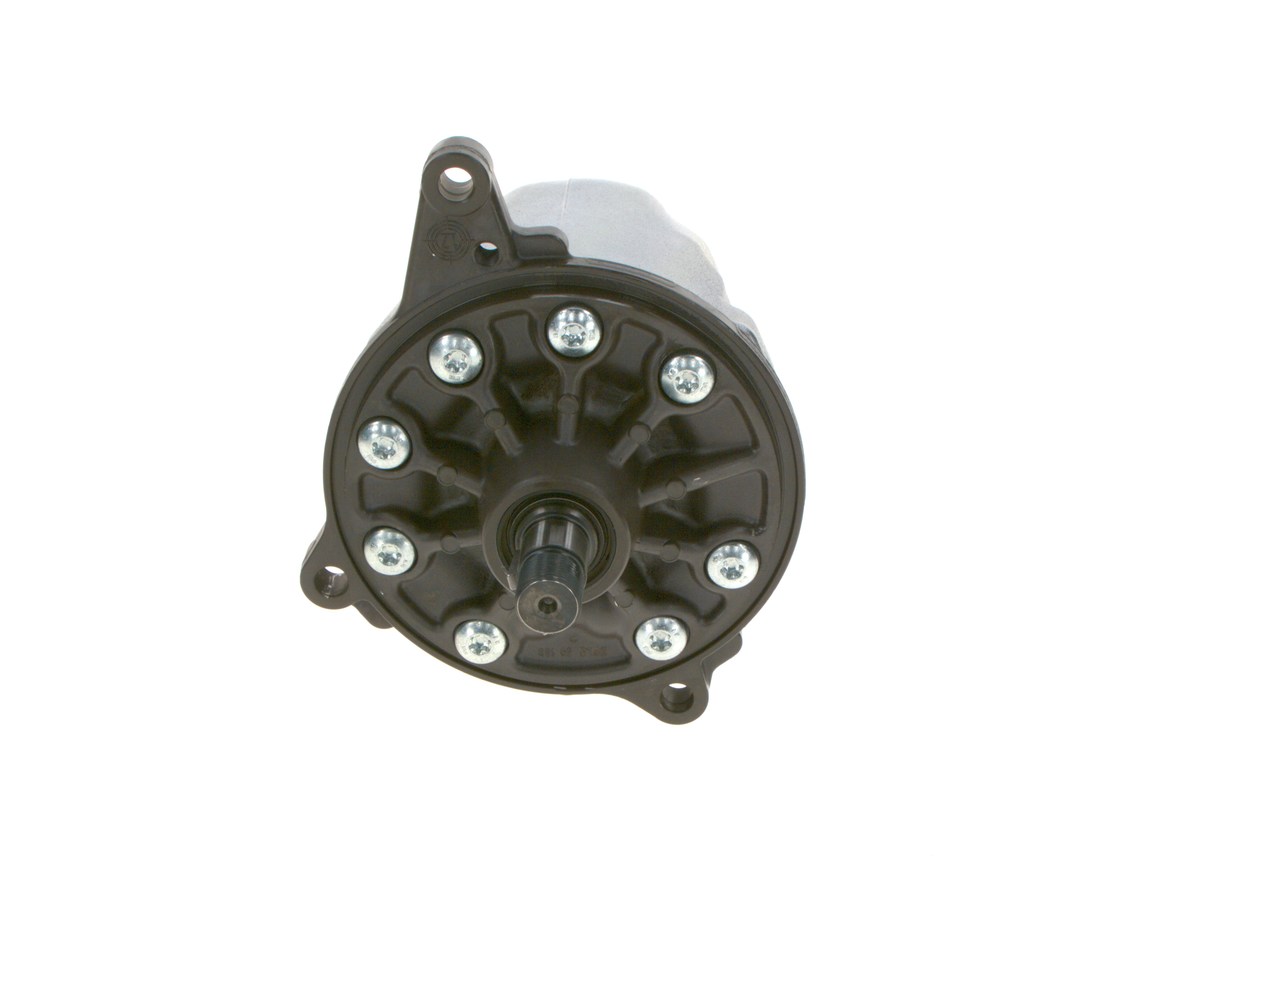 BOSCH Hydraulic, Vane Pump, Anticlockwise rotation Steering Pump K S00 001 721 buy